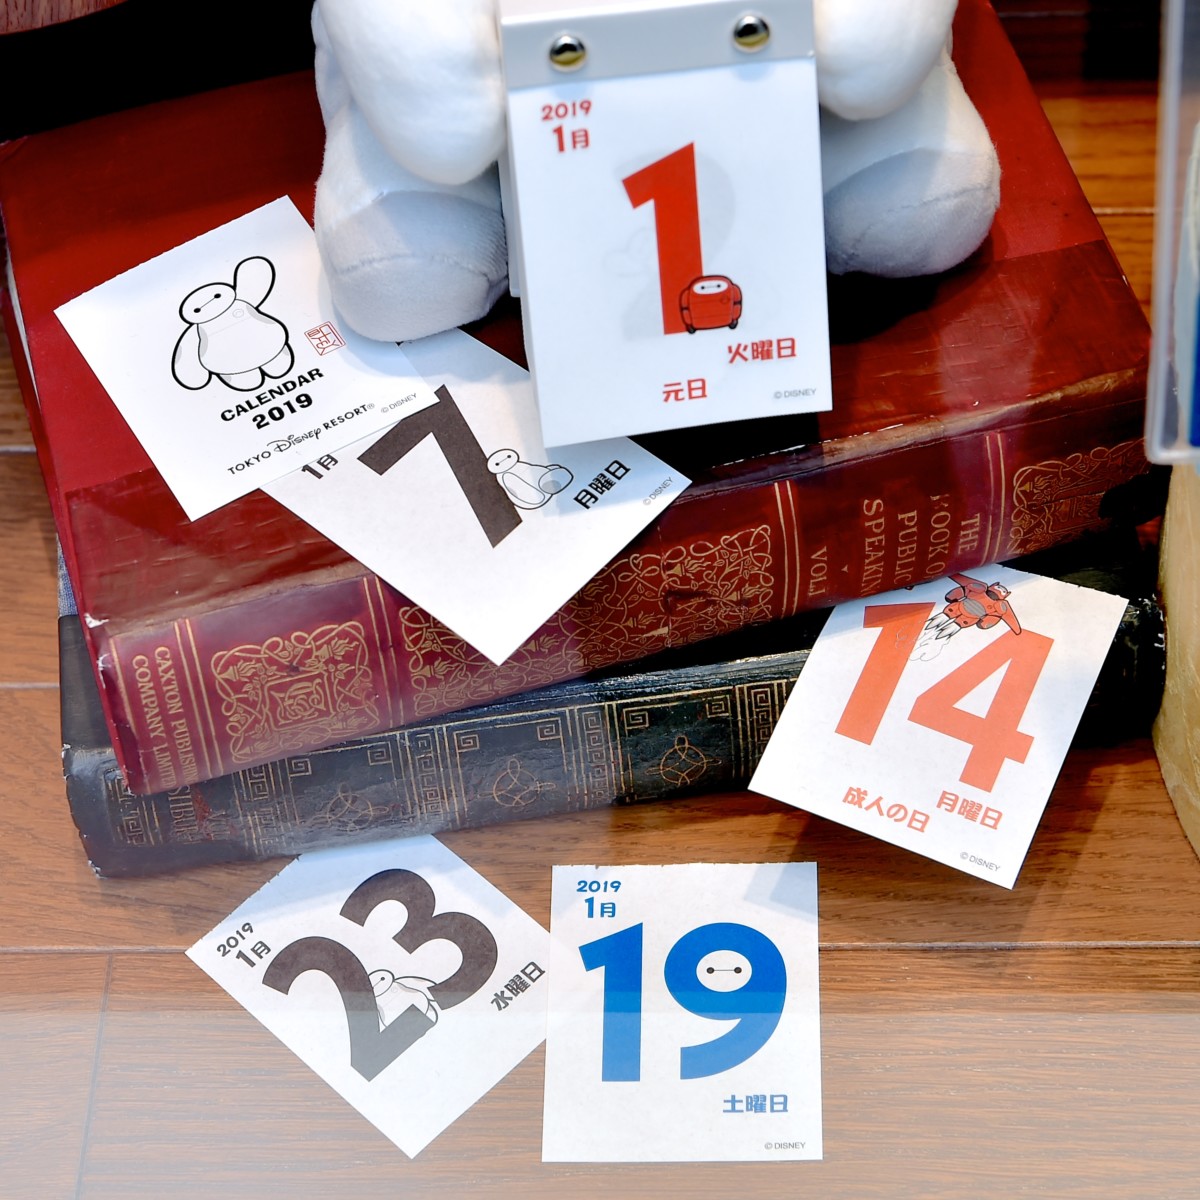 かわいいぬいぐるみ仕様 東京ディズニーランド ベイマックス 日めくりカレンダー